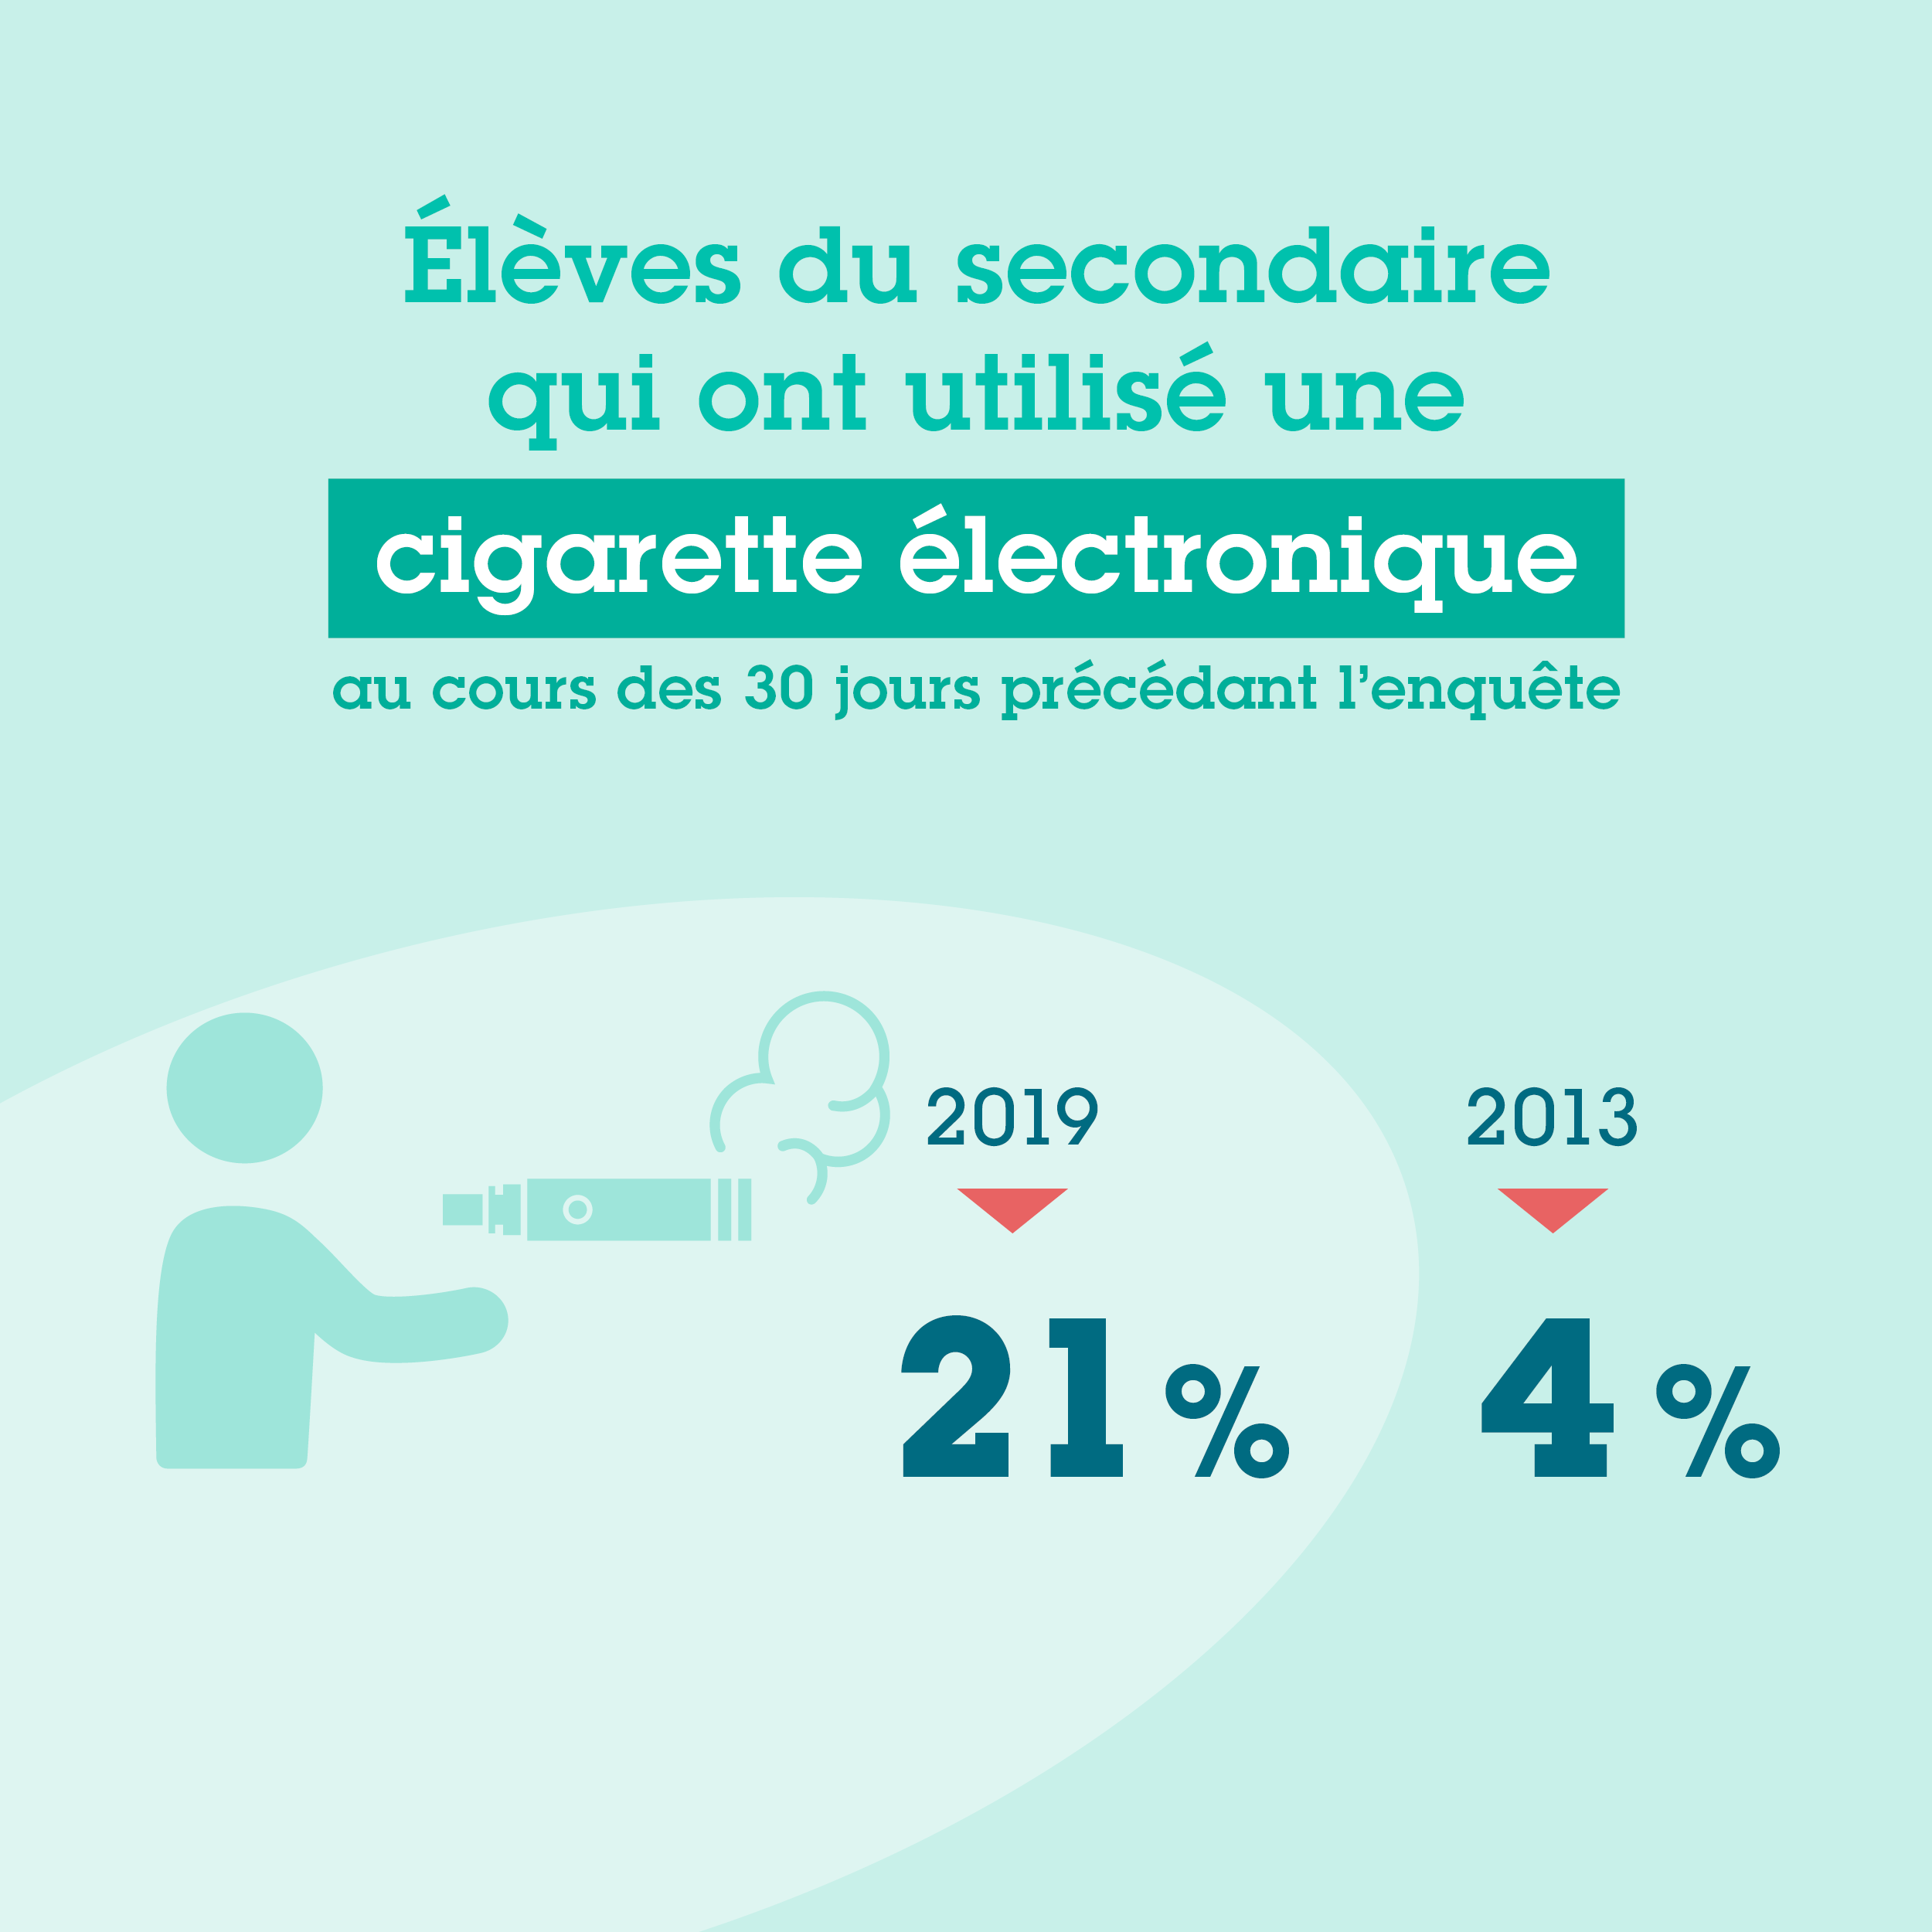 21 % des élèves du secondaire avaient utilisé une cigarette électronique au cours des 30 jours précédant l’enquête en 2019, contre 4 % en 2013.